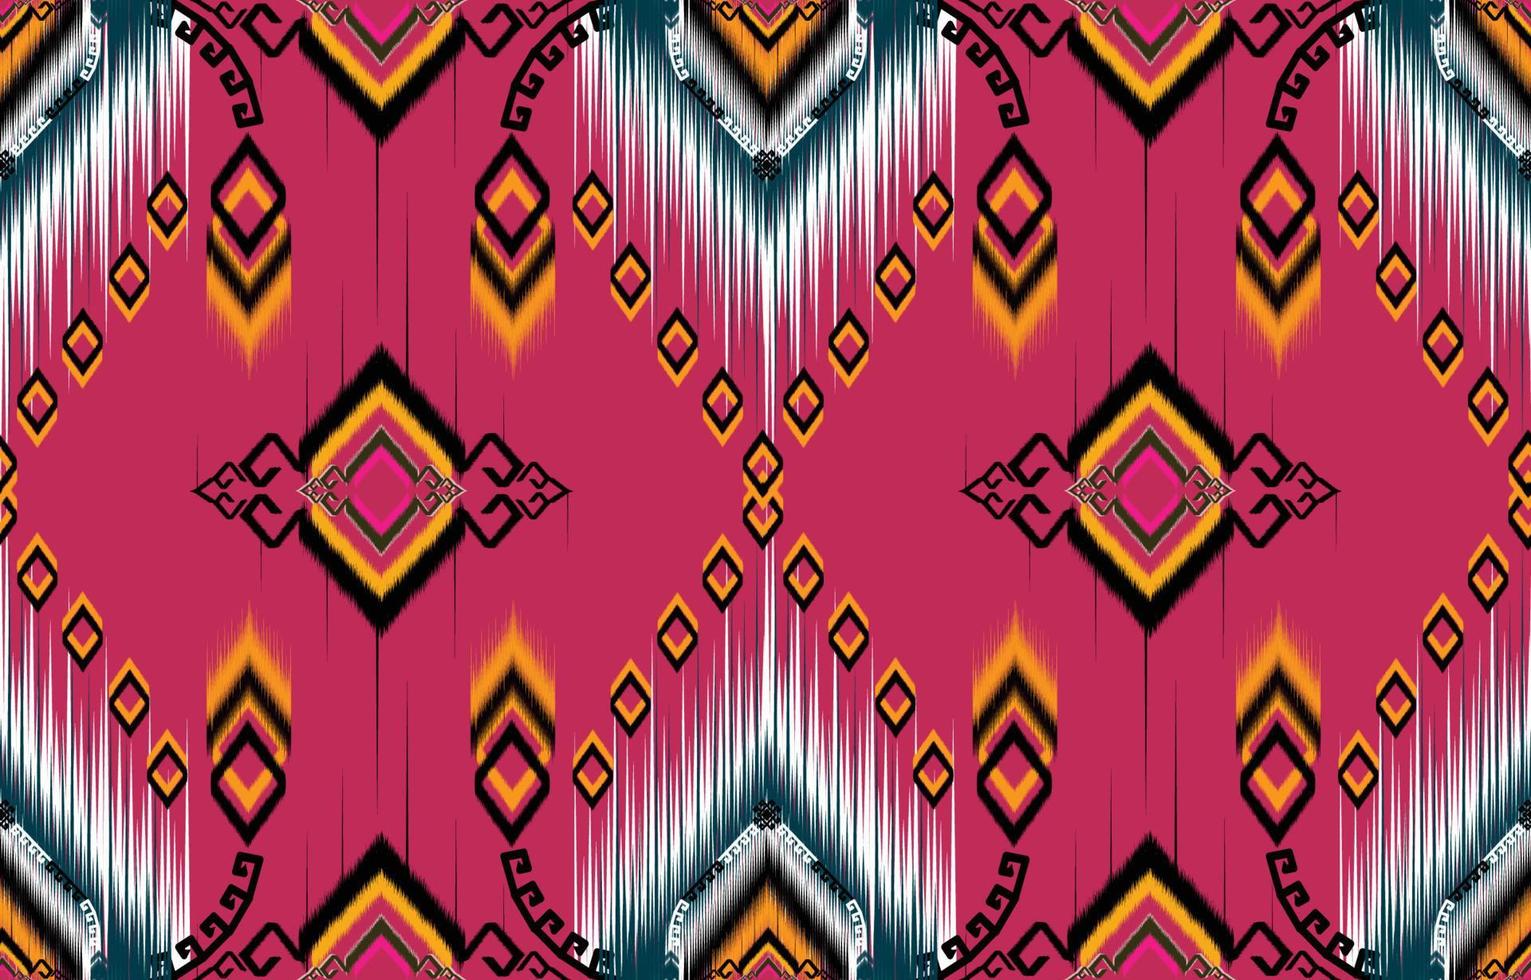 patrón de ikat. patrón étnico geométrico africano, americano, occidental, pakistán, asia, textil con motivos aztecas y bohemio. diseño para fondo, papel pintado, estampado de alfombras, tela, batik, azulejo. vector de Paisley ikat.